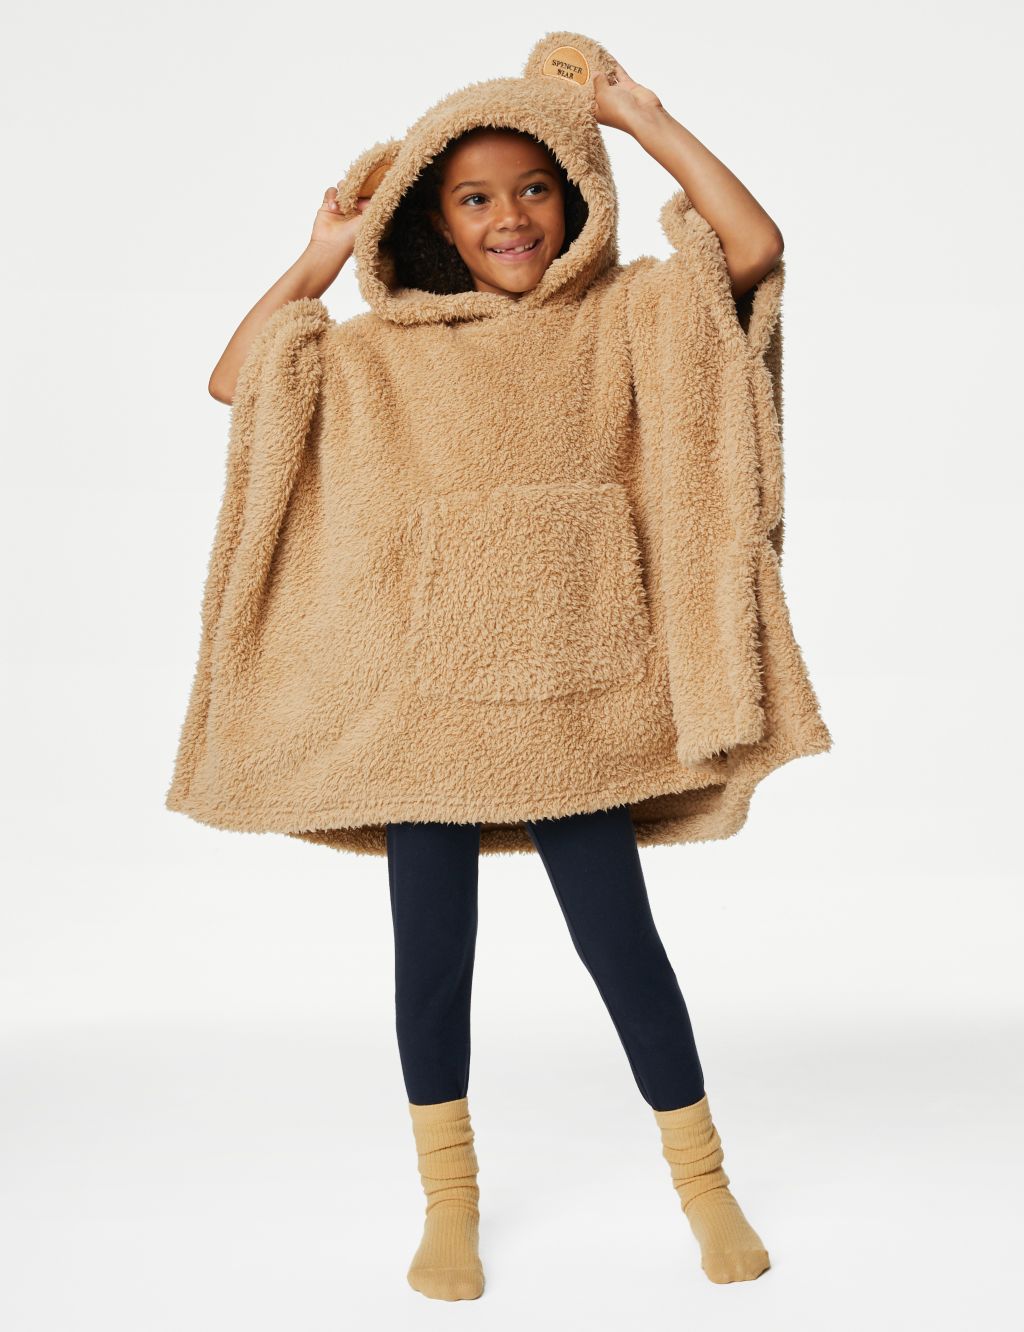 Spencer Bear™ Hooded Blanket image 1